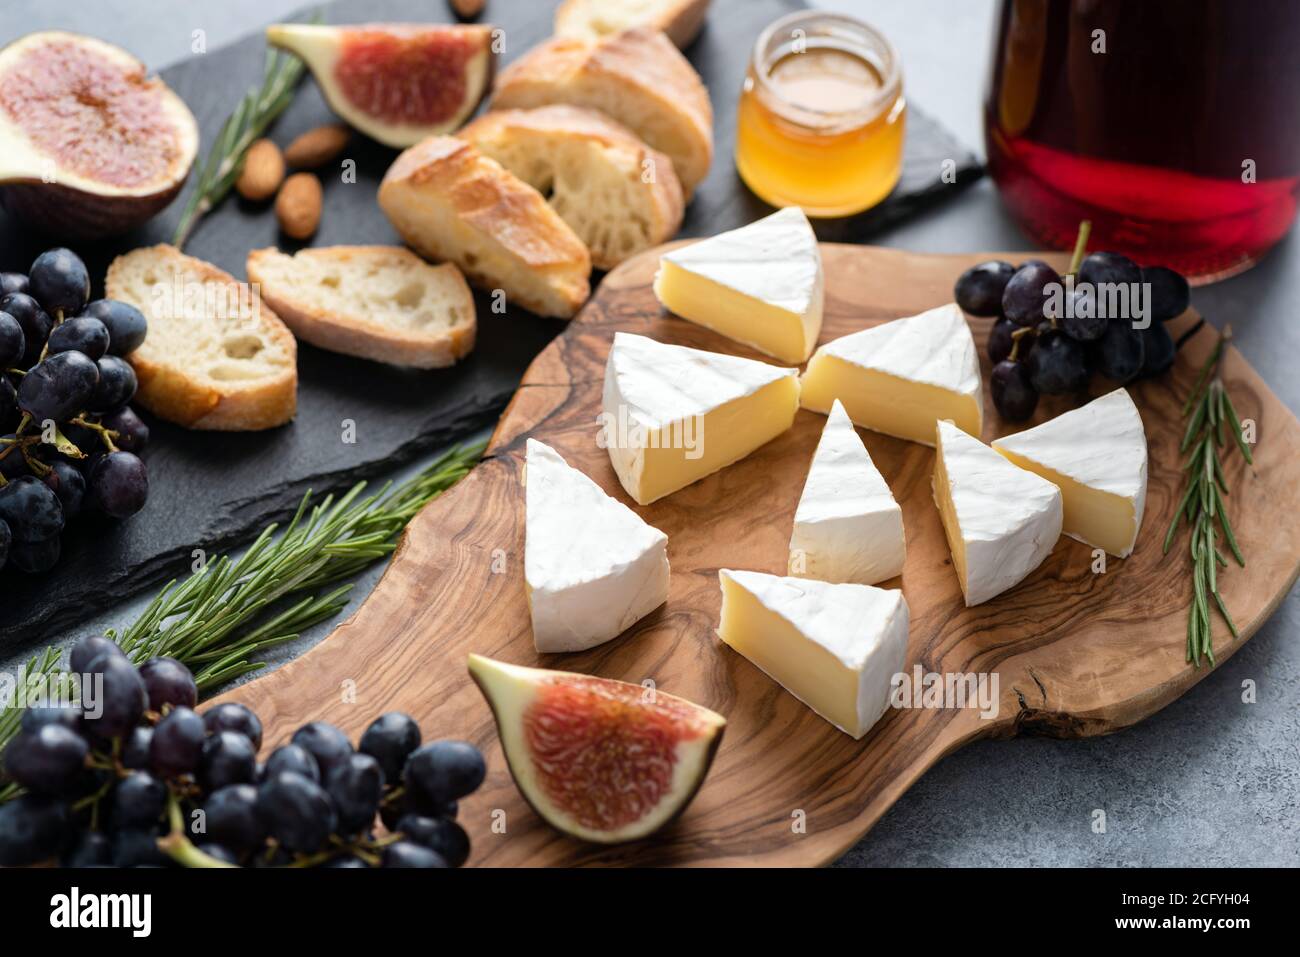 Fromage camambert aux figues, raisins, miel et vin. Cuisine gastronomique, assiette de fromages pour hors-d'œuvre Banque D'Images